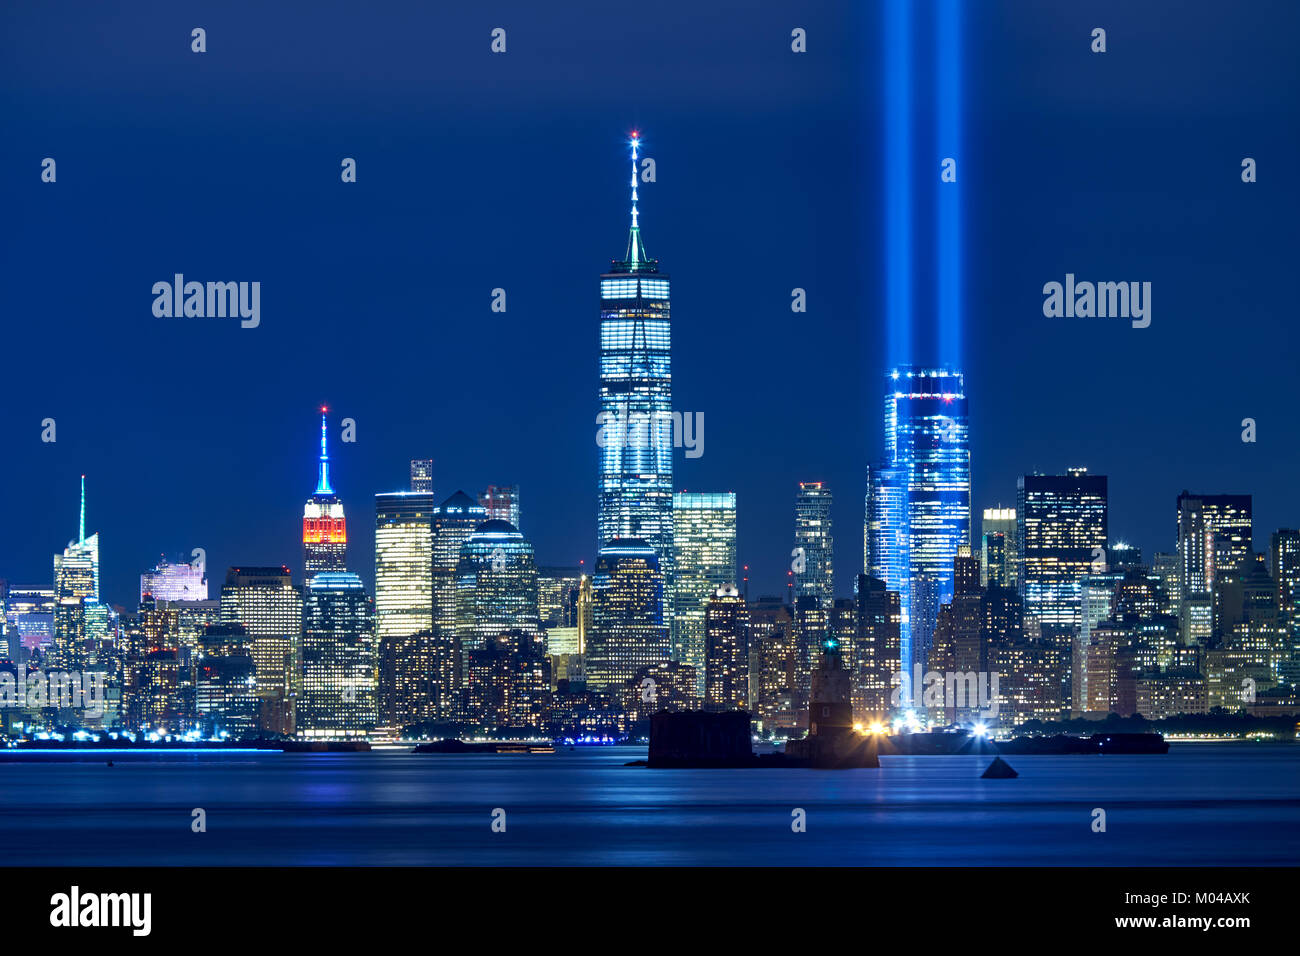 Les deux rayons de l'hommage rendu à la lumière avec des gratte-ciels du quartier financier de nuit. Lower Manhattan, New York City Banque D'Images